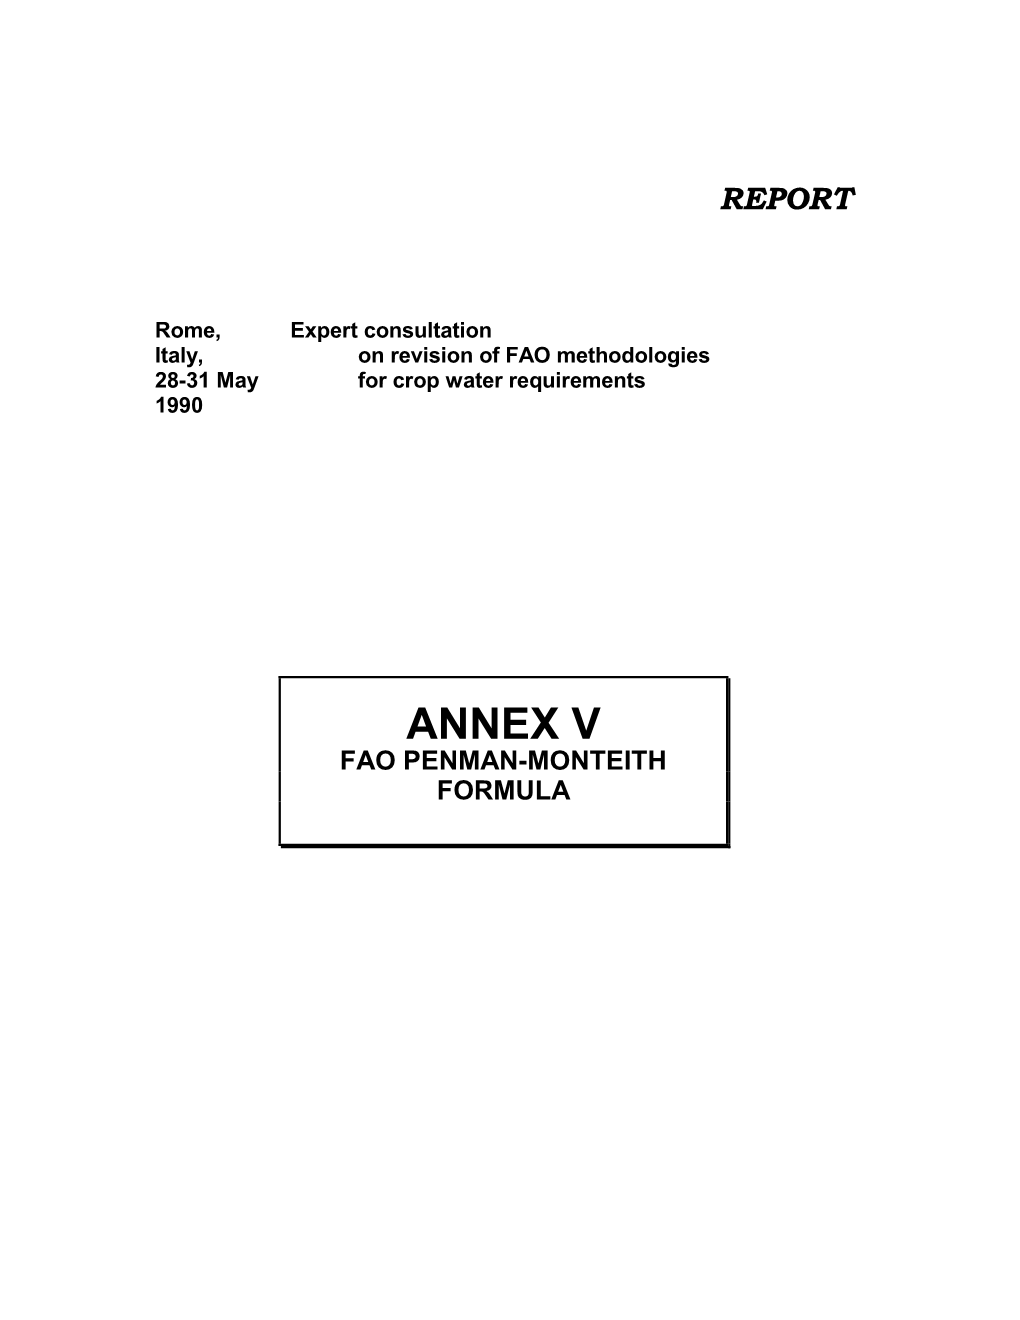 Annex V Fao Penman-Monteith Formula